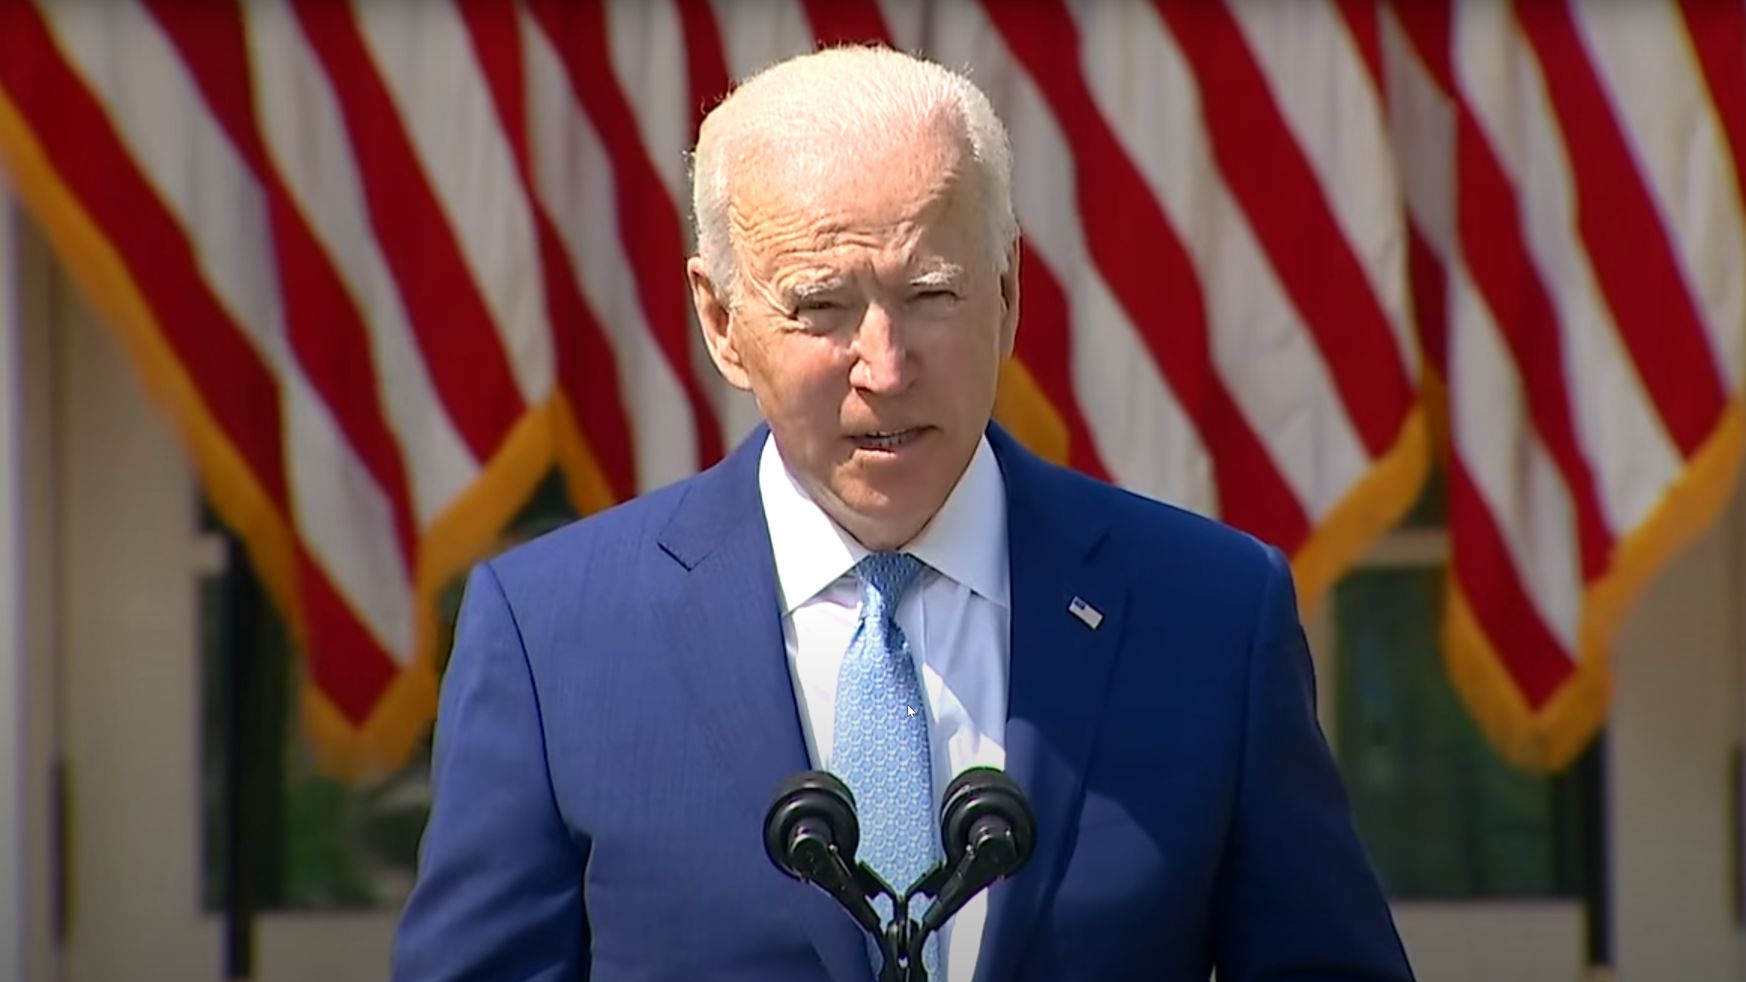 Biden announces new gun restrictions, calls for ban on assault weapons